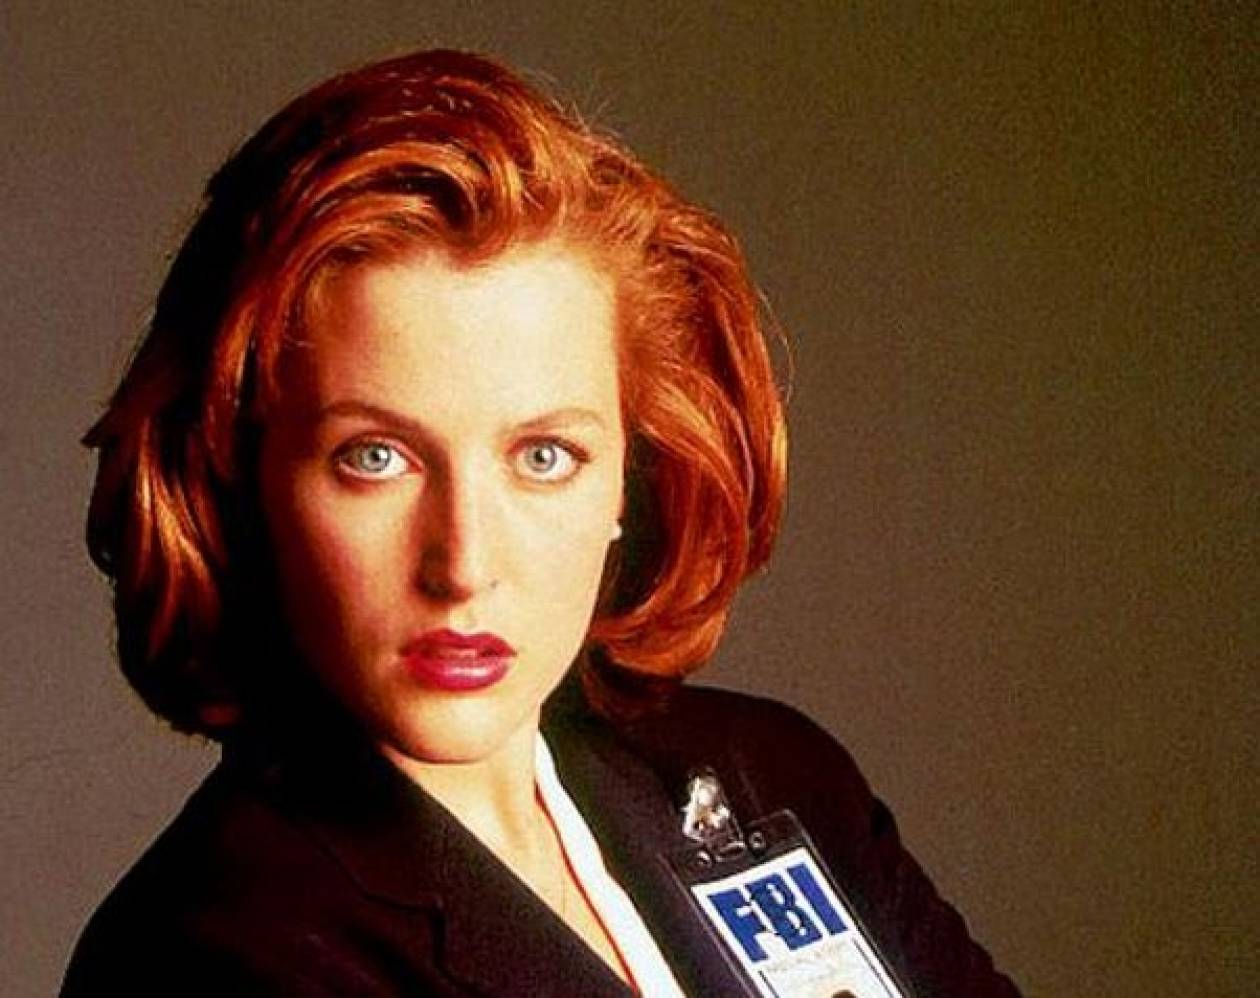 Δείτε πως είναι σήμερα η «Πράκτορας Scully» από την σειρά X-Files